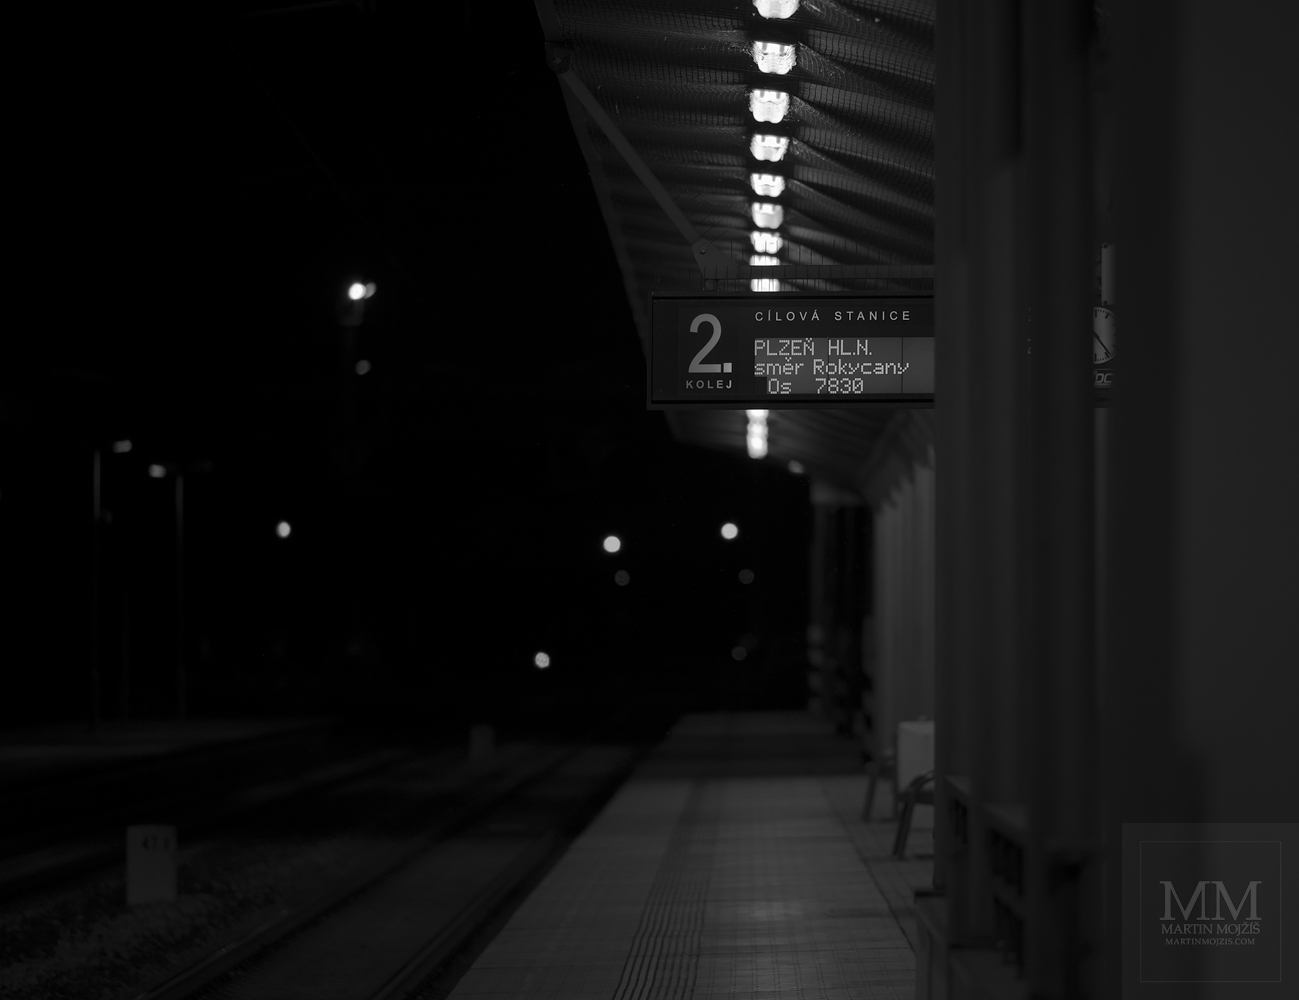 Železniční nádraží v noci. Umělecká černobílá fotografie s názvem DO PLZNĚ. Fotograf Martin Mojžíš.